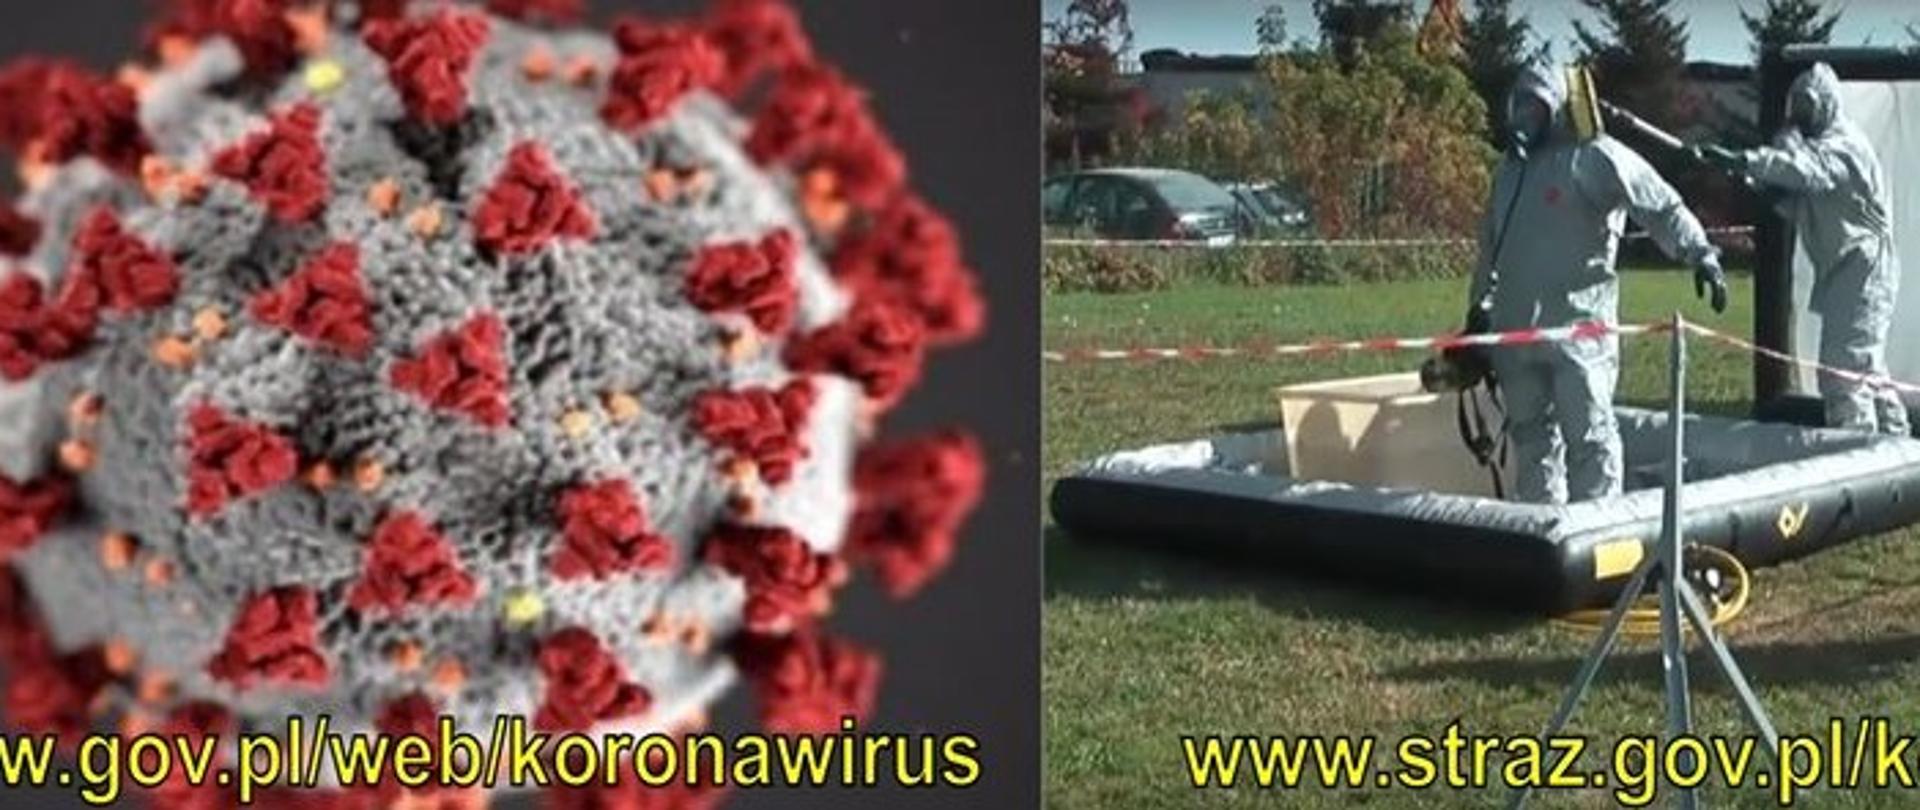 Po lewej wyobrażenie wyglądu wirusa, po prawej ludzie w specjalnych kombinezonach